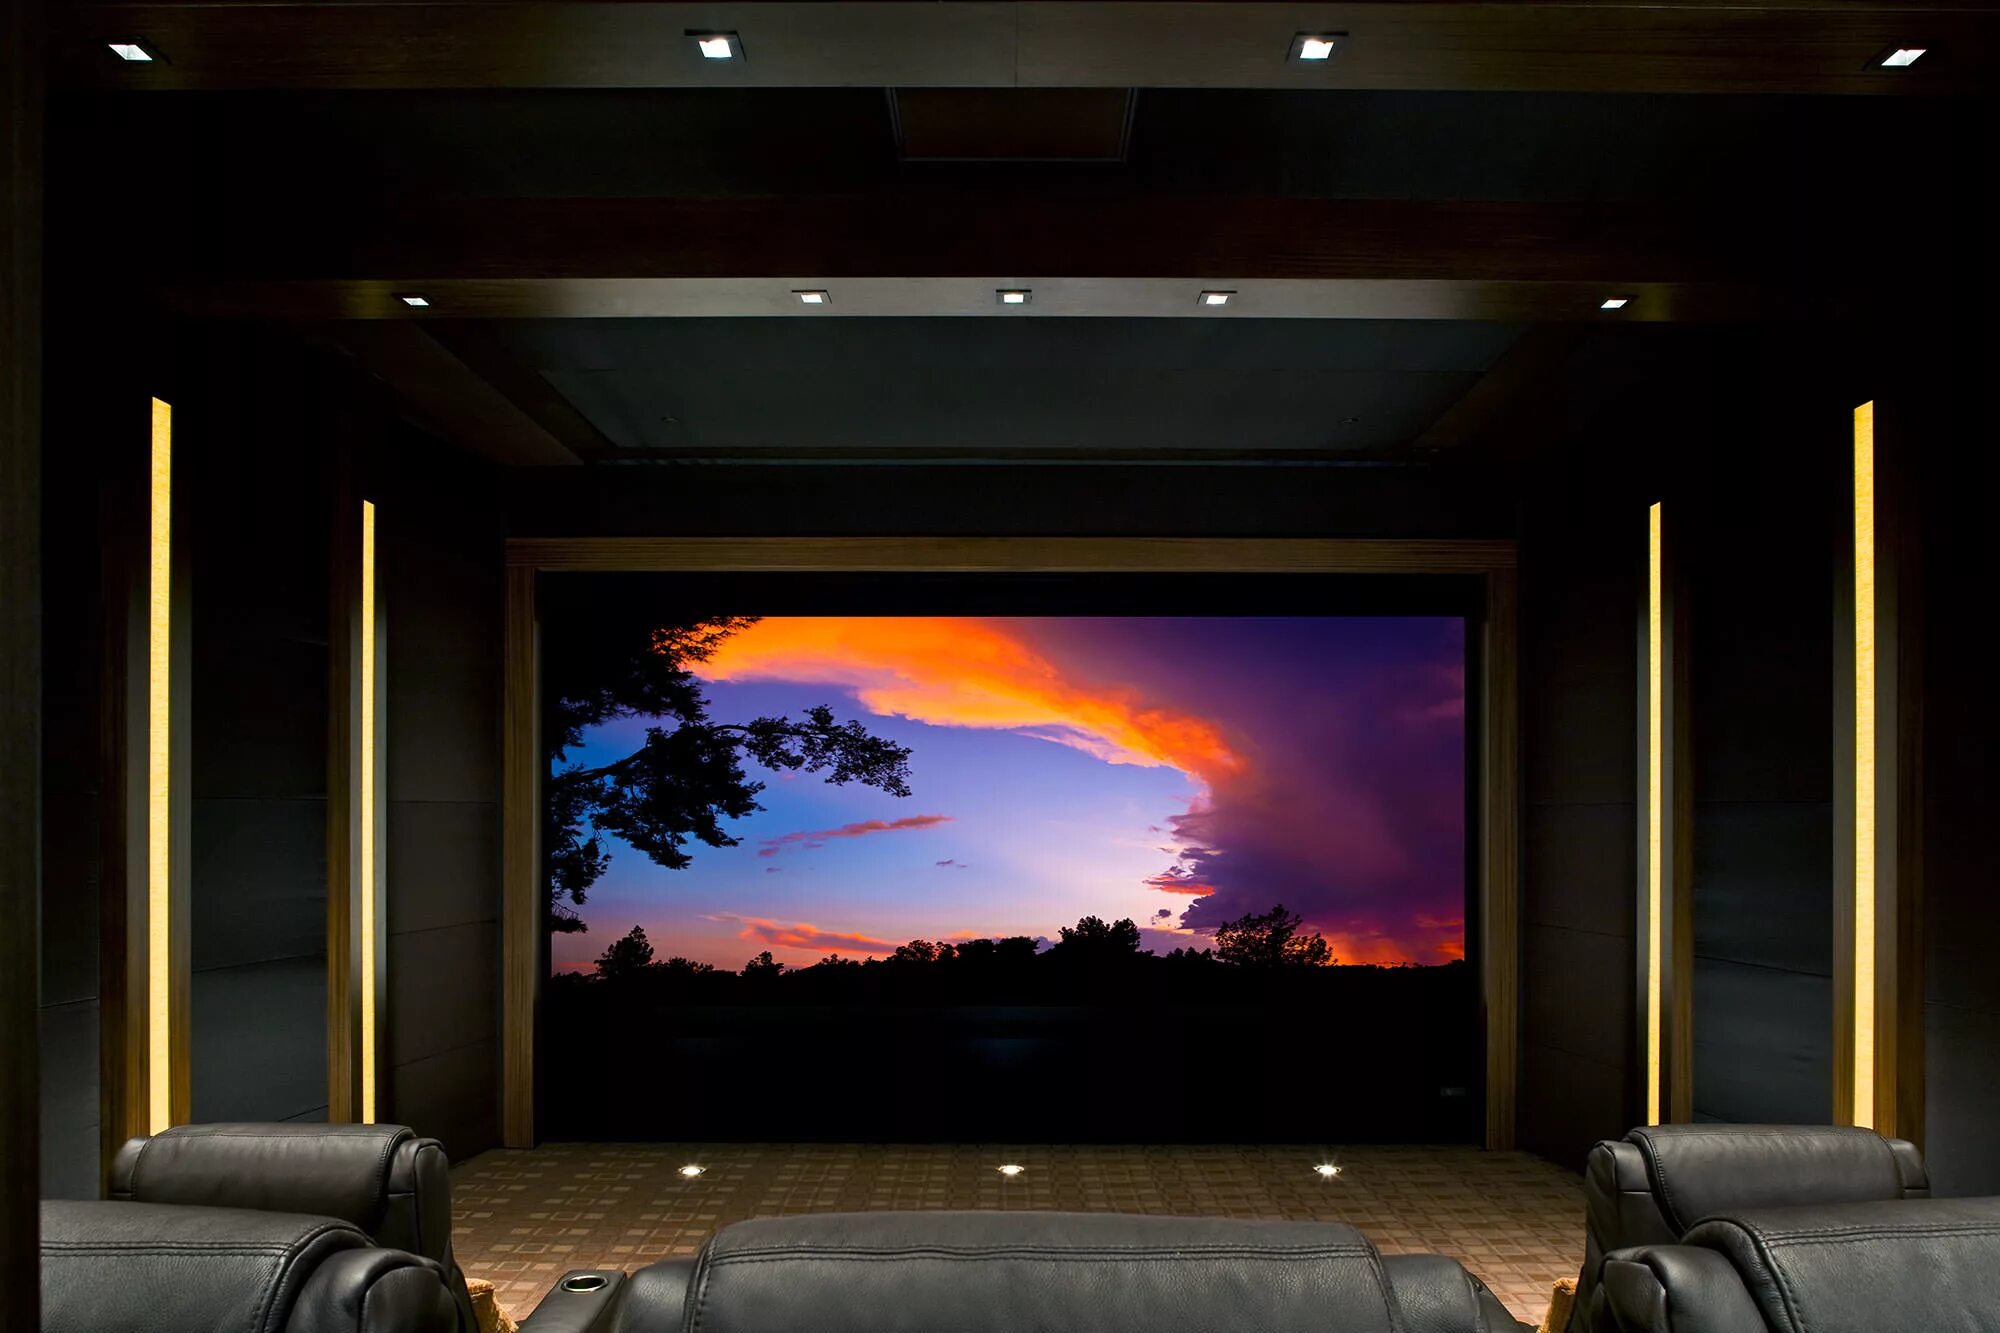 Проектор в домашних условиях. Домашний кинотеатр с проектором и экраном. Комната с проектором. Подсветка для домашнего кинотеатра. Комната с проектором в кинотеатре.